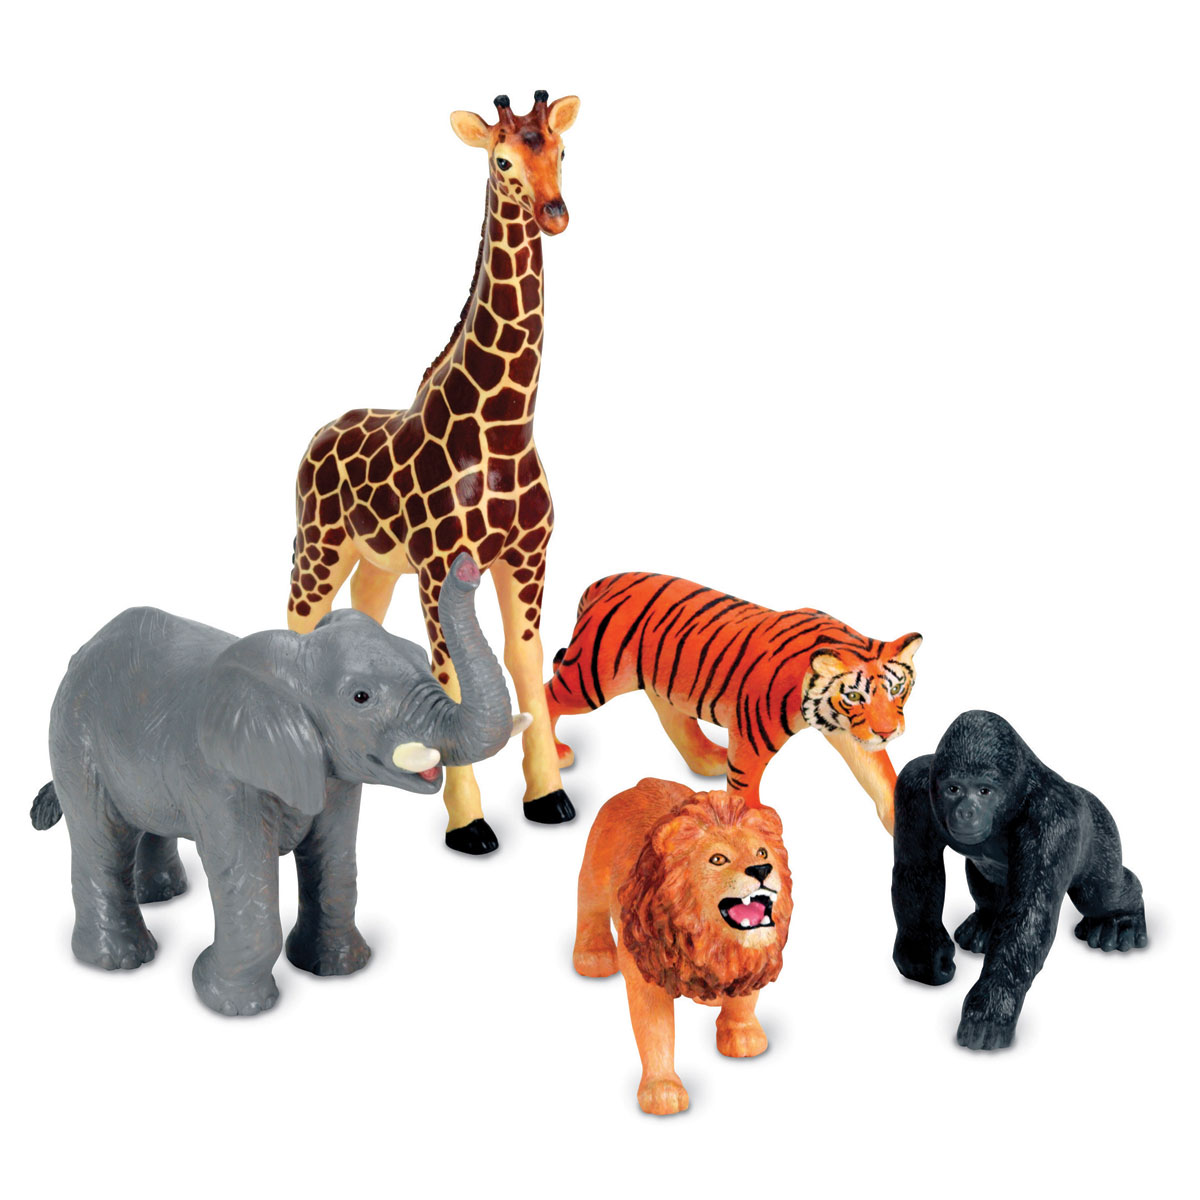 Тигр лев жираф слон. Джунгли Анимал фигурки. Пластиковые игрушки животные. Набор животных для детей. Набор животных для детей фигурки.